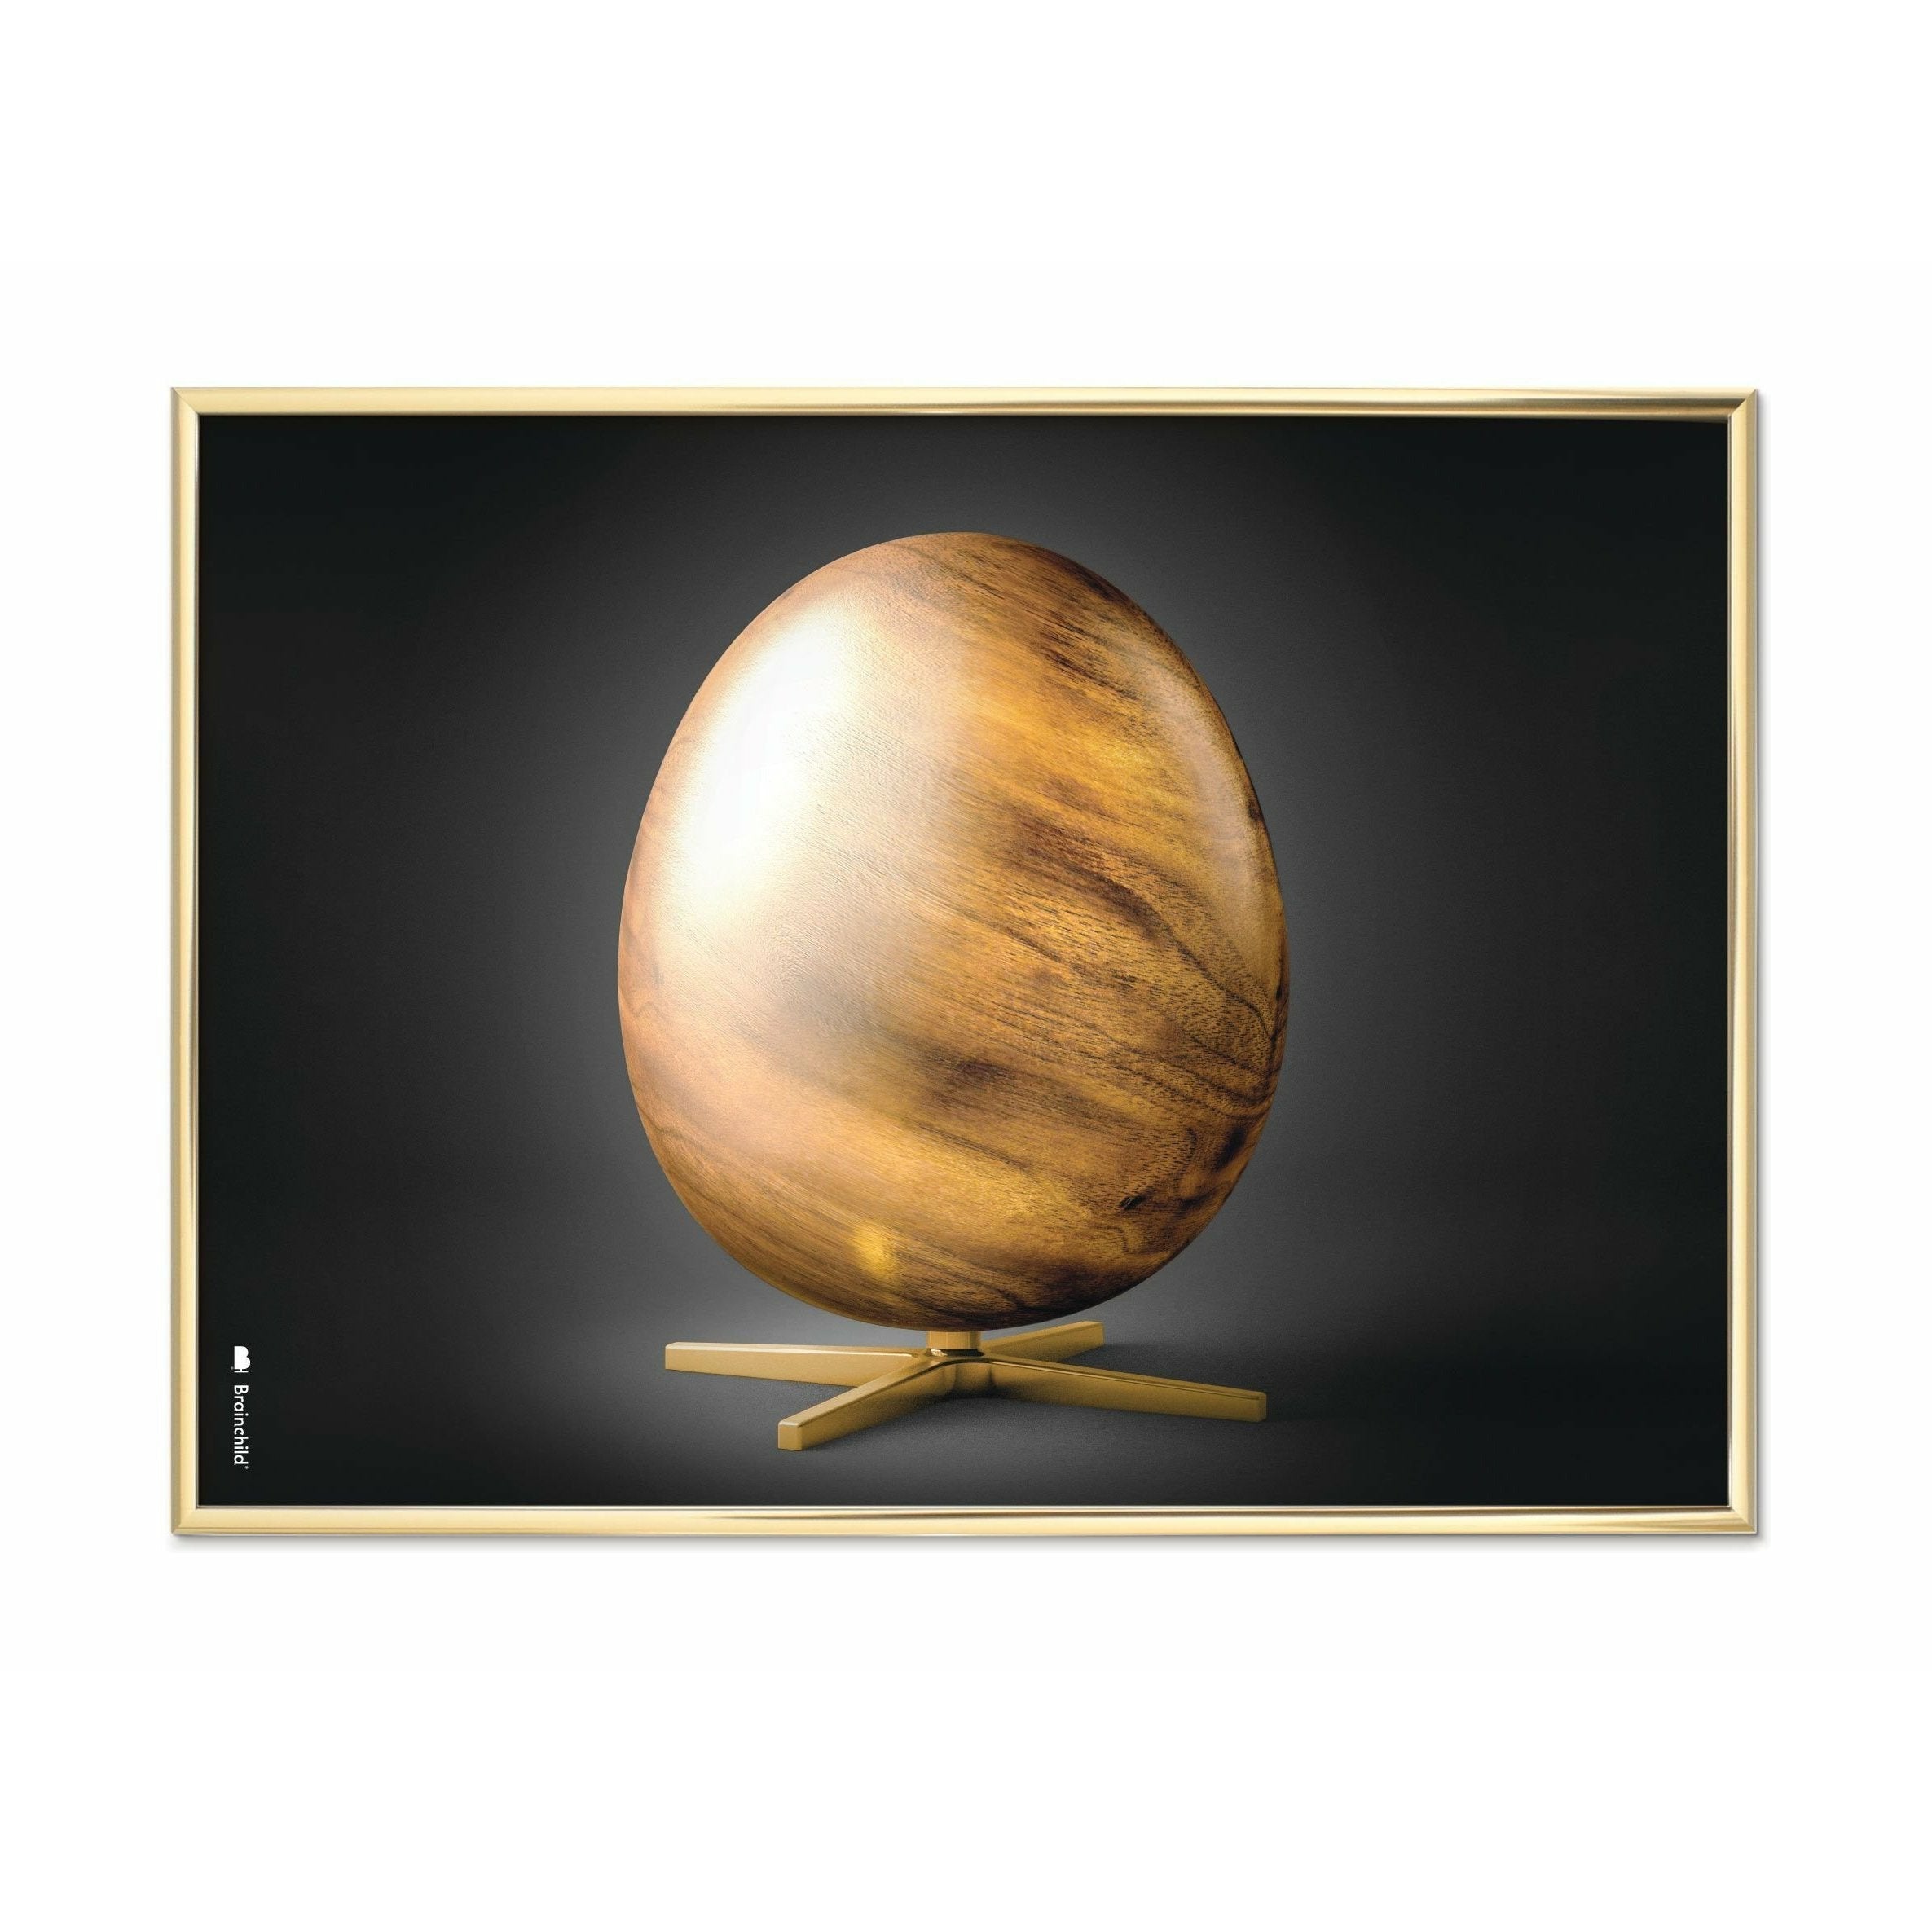 Brainchild Egg Cross Format Poster, Brass Frame 30x40 Cm, Black